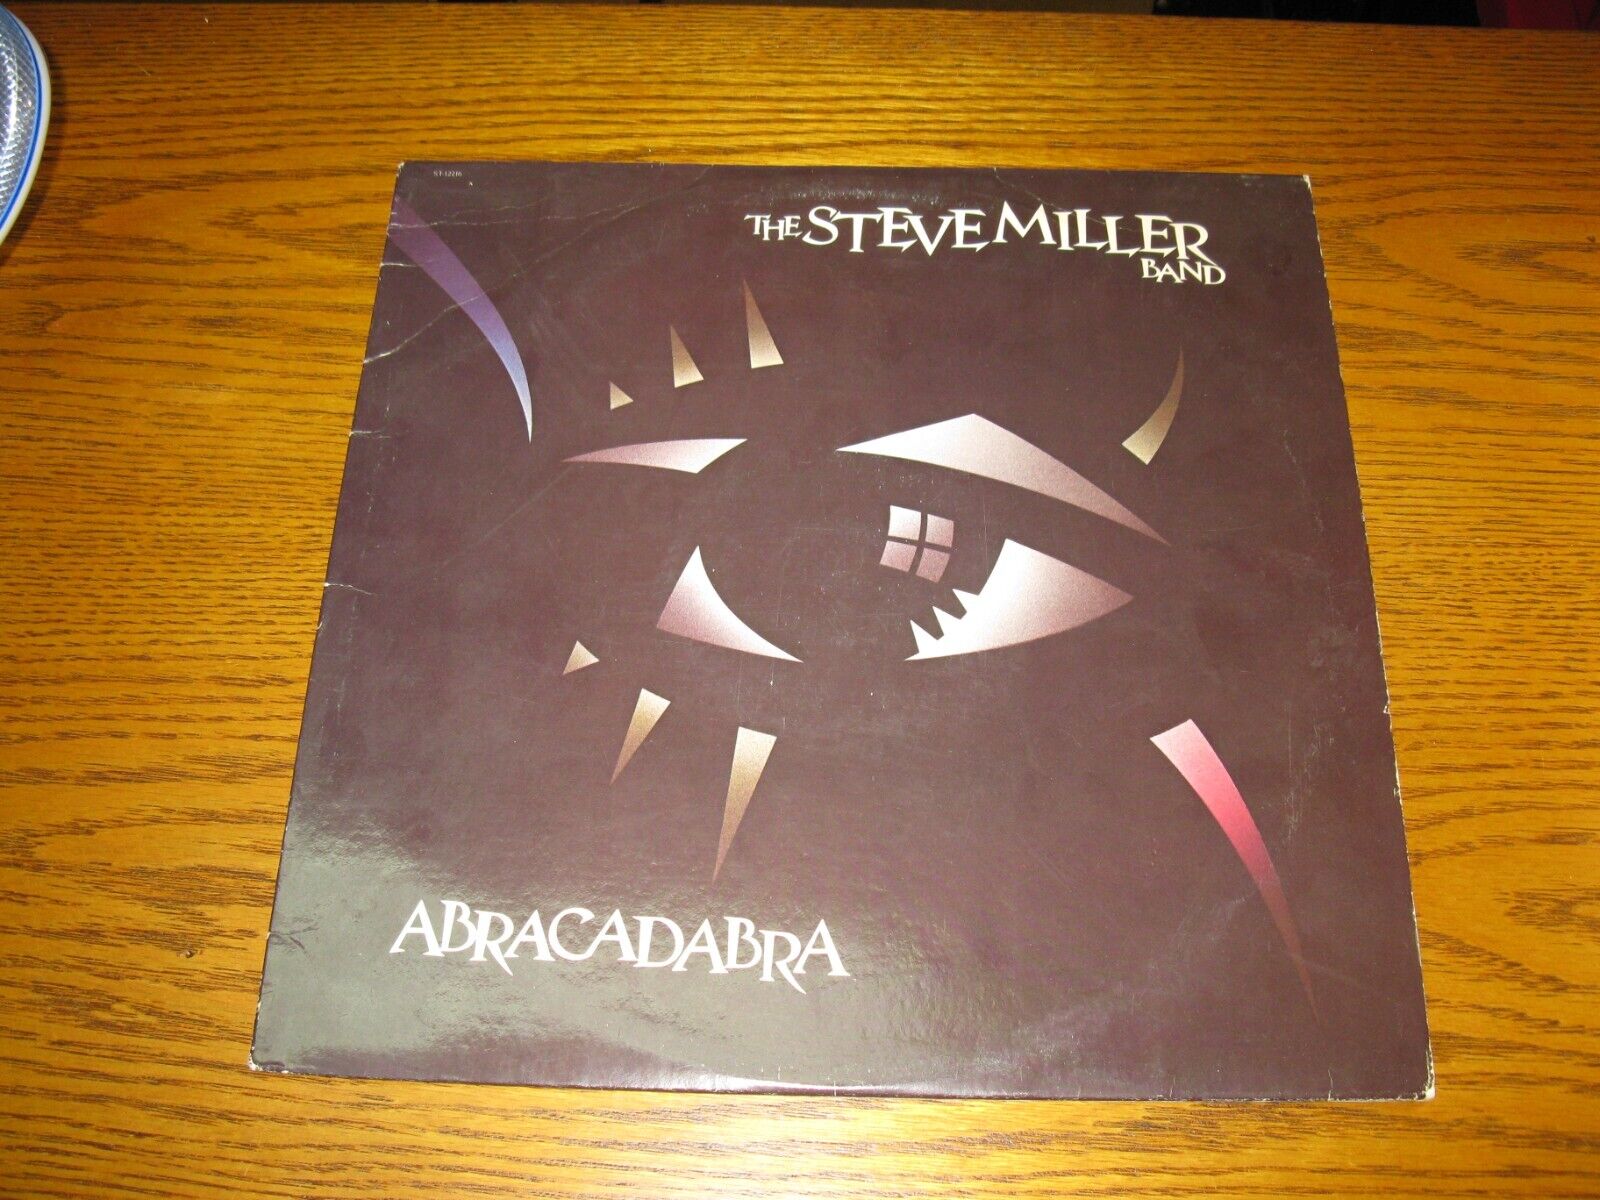 vinyl- The Steve Miller Band - Abracadabra - ultrasonically cleaned - new sleeve